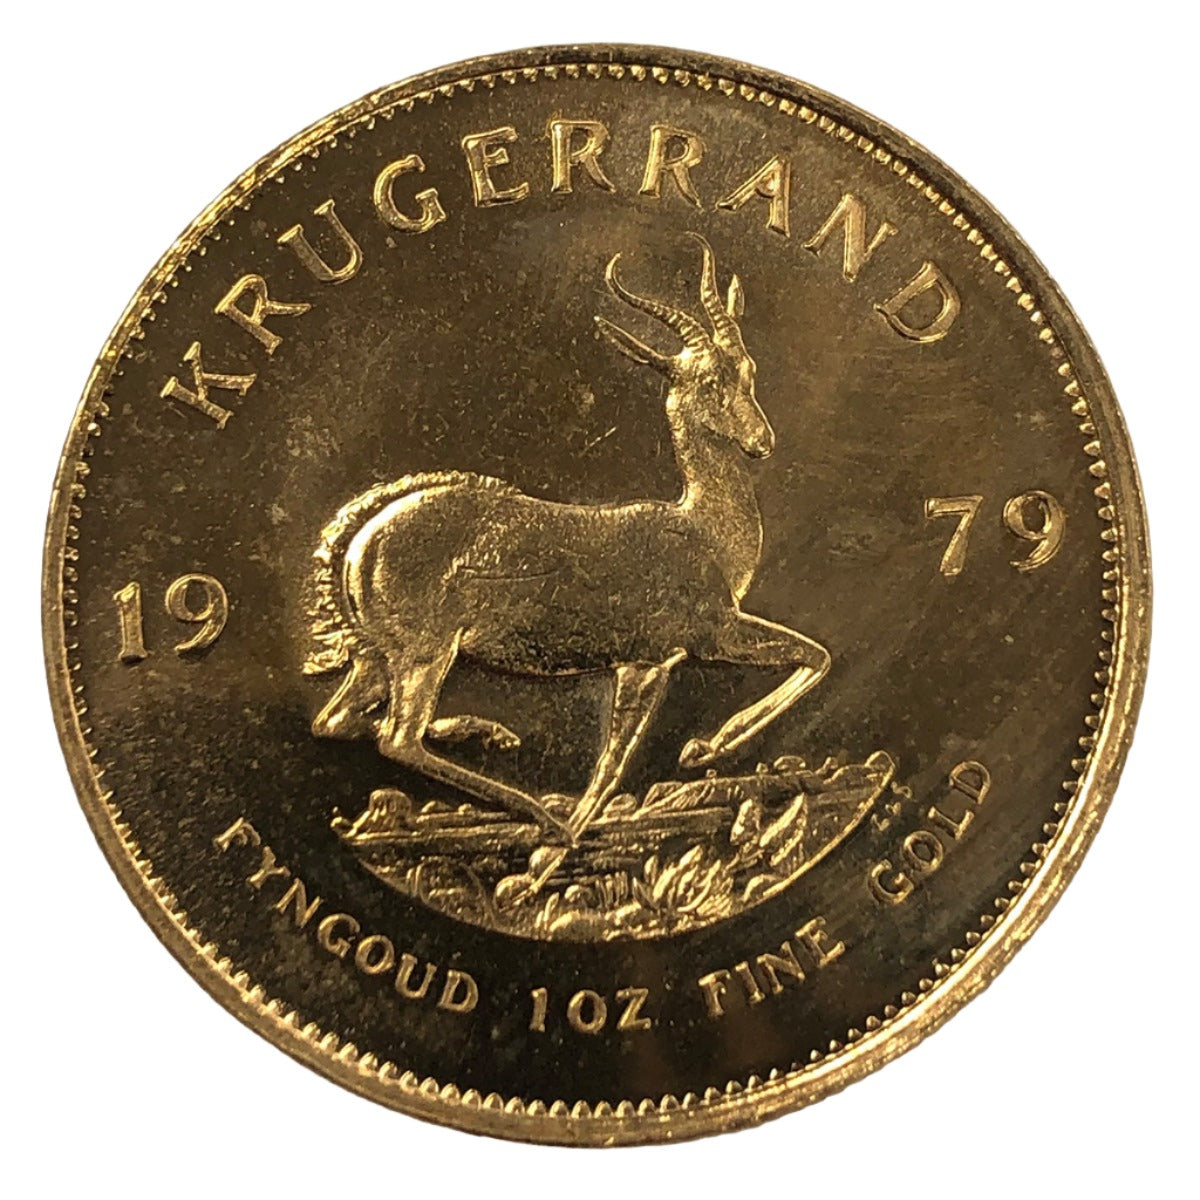 1979 South African 1 oz Gold Krugerrand (BU)